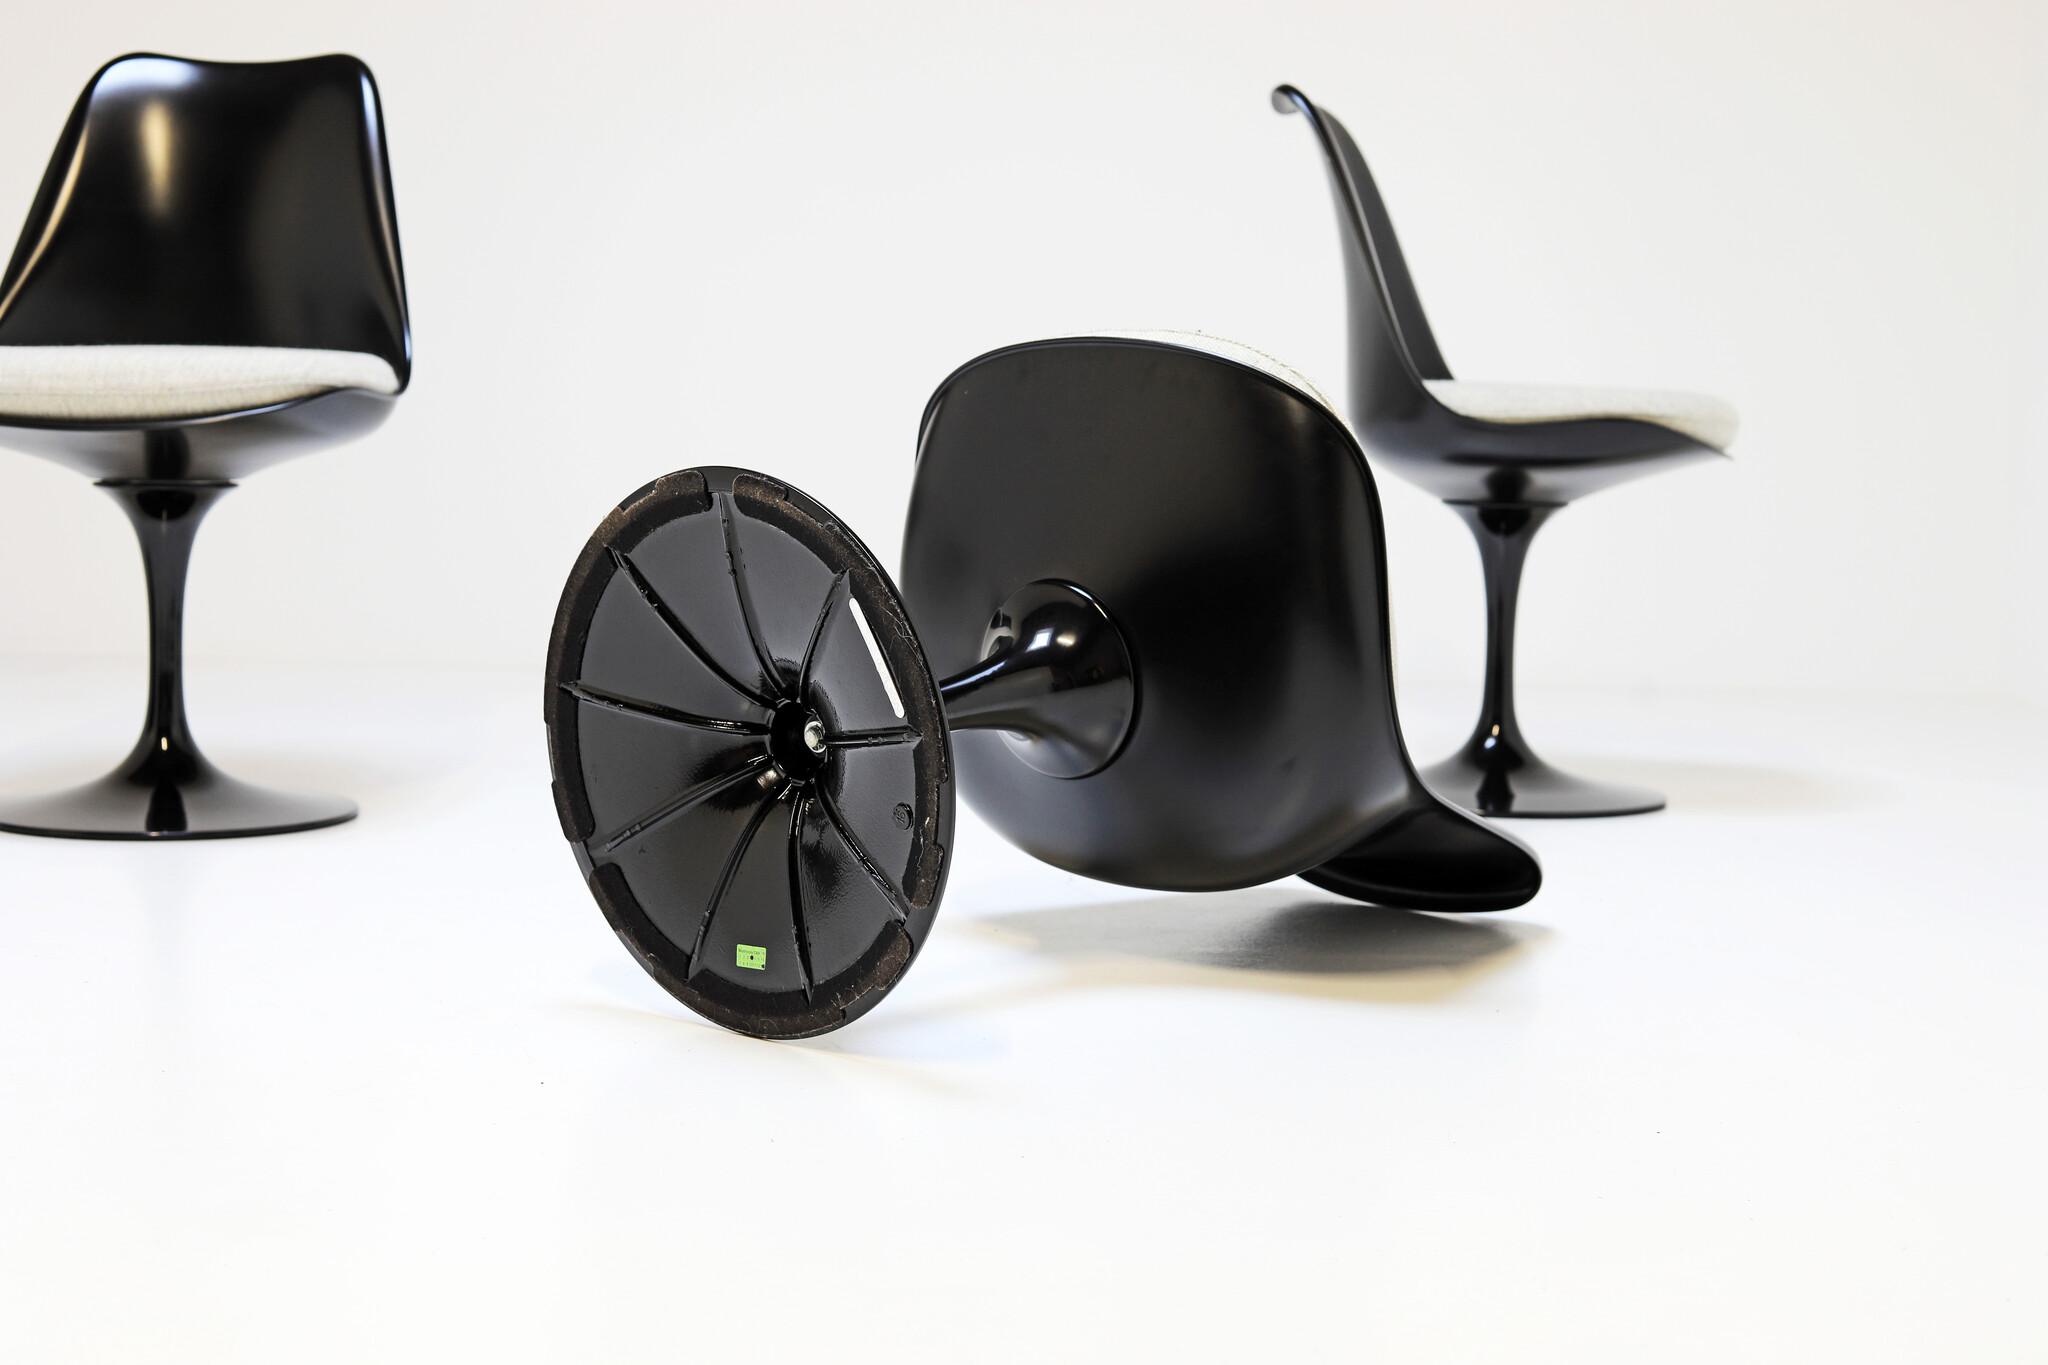 Tulip stoelen door Eero Saarinen voor Knoll International